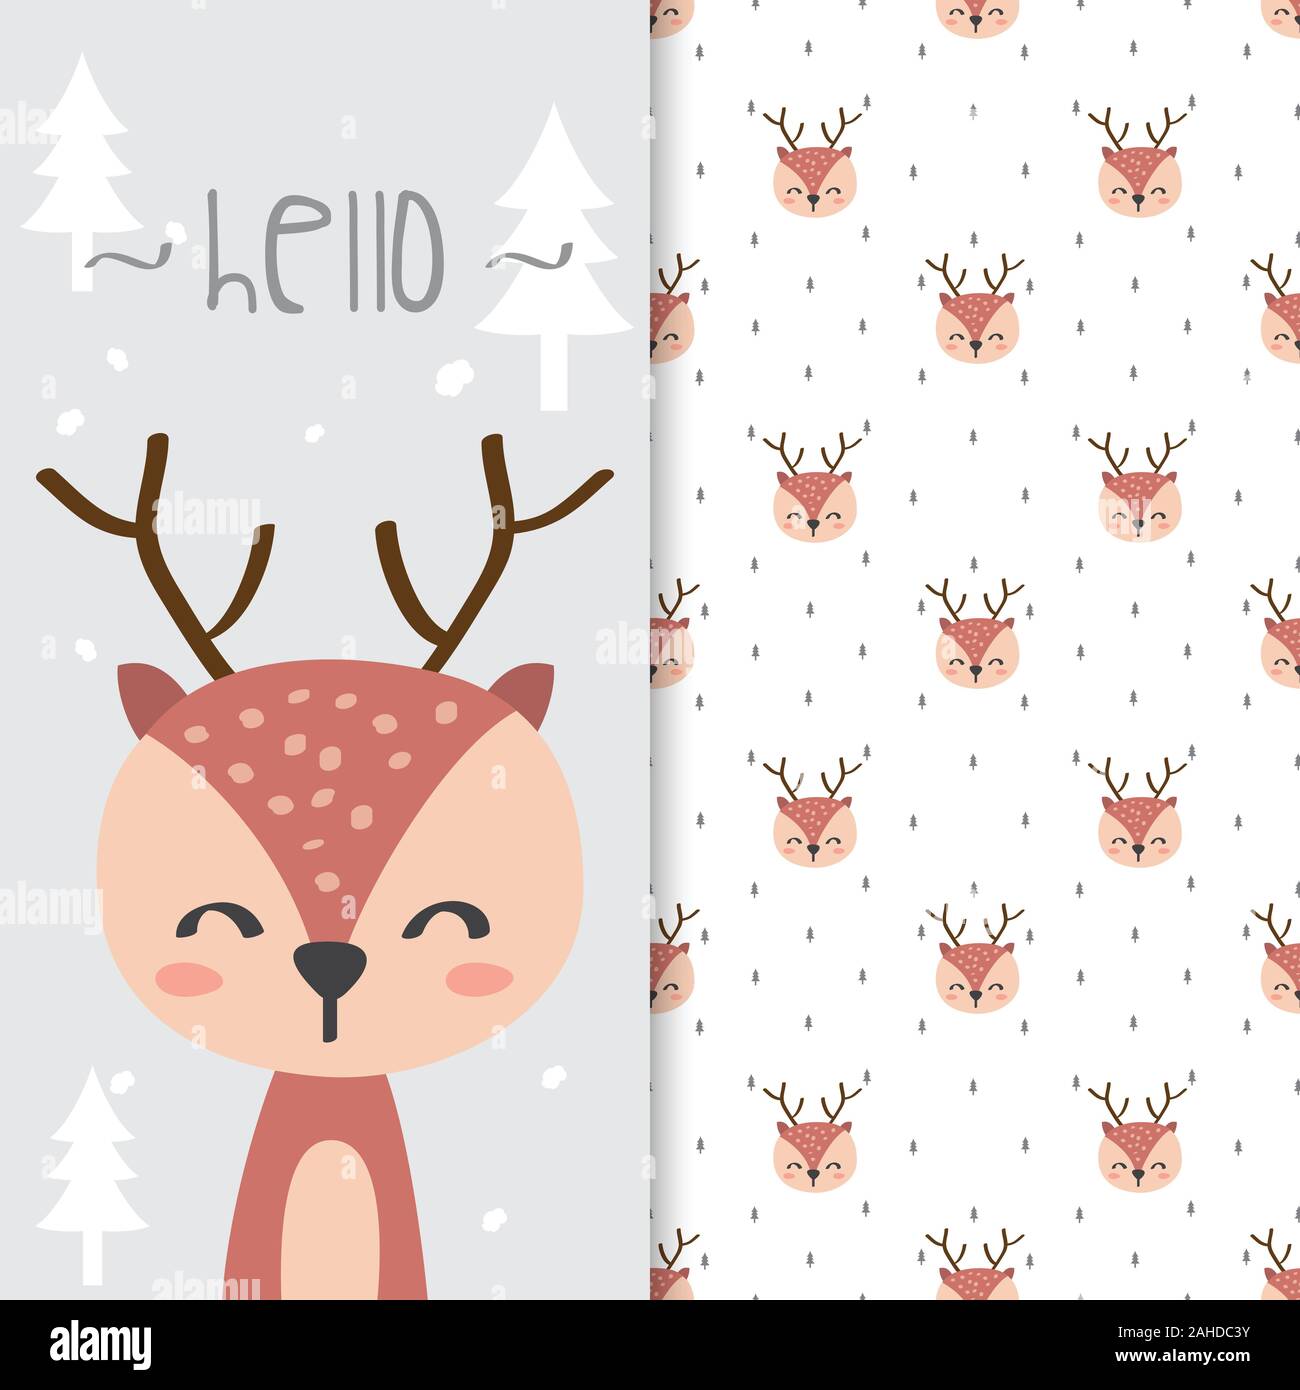 300+] Deer Wallpapers | Wallpapers.com